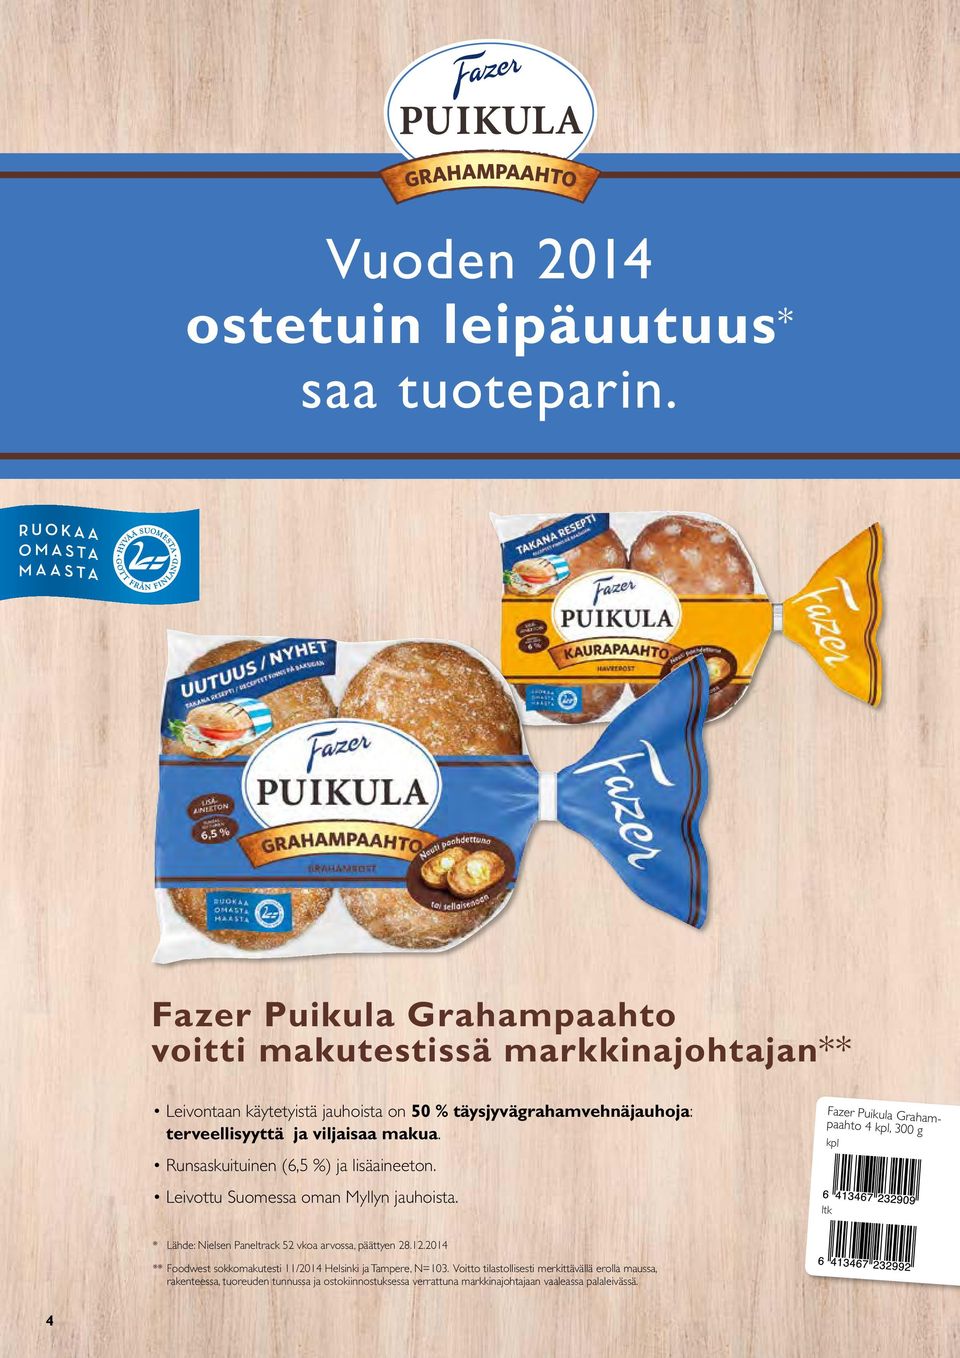 viljaisaa makua. Runsaskuituinen (6,5 %) ja lisäaineeton. Leivottu Suomessa oman Myllyn jauhoista.